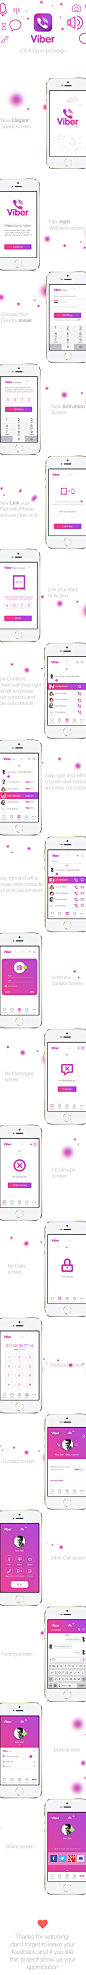 Viber Redesign for iOS 8 : Viber App iOS 8 Concept design 